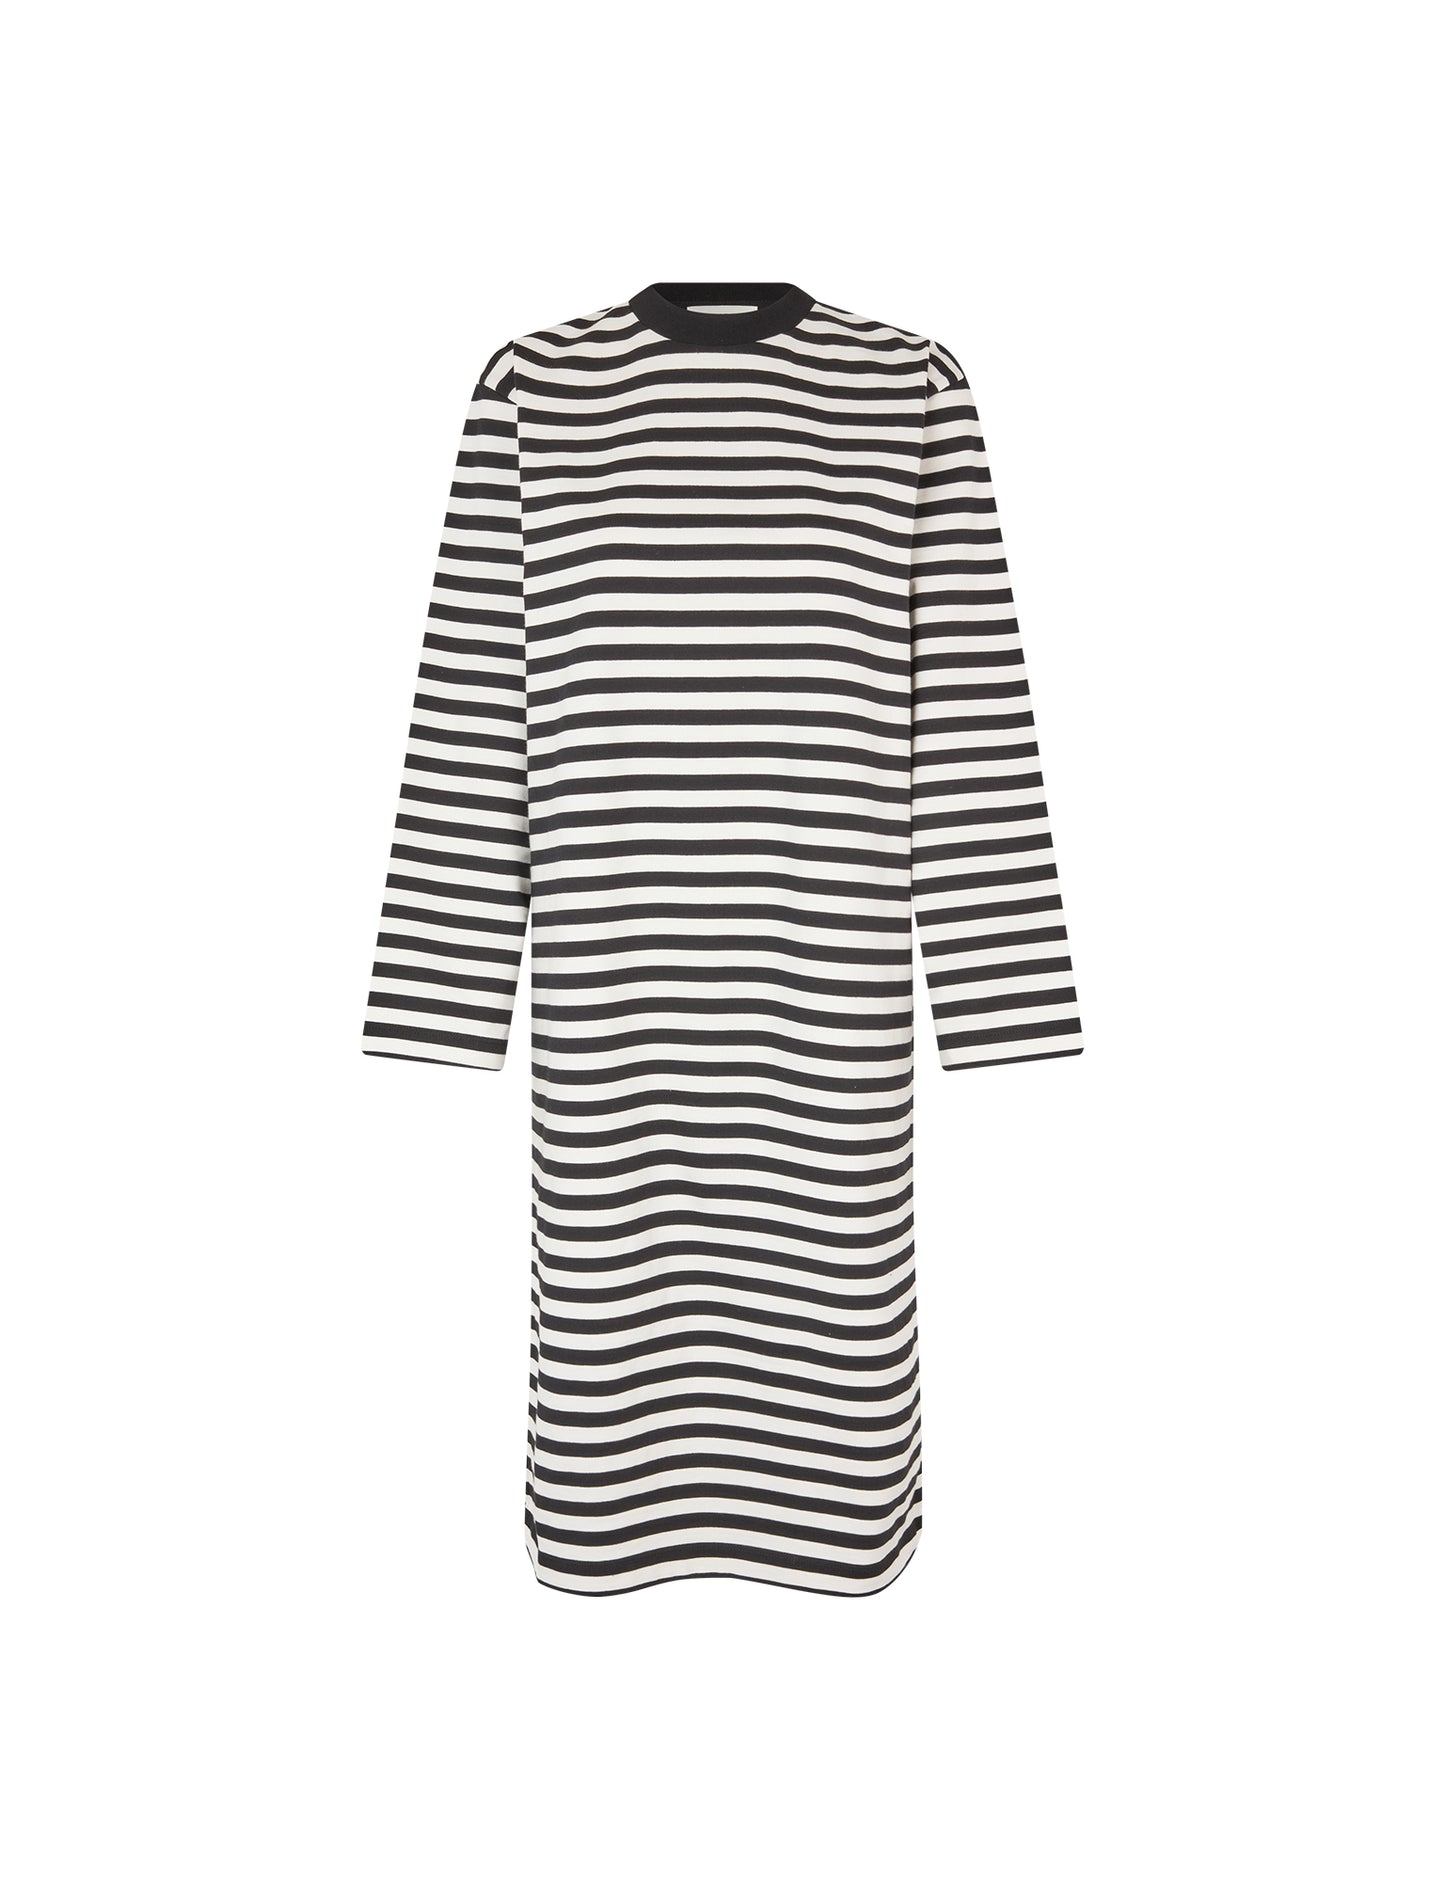 Heavy Single Stripe Nolly Dress, Black/Snowwhite